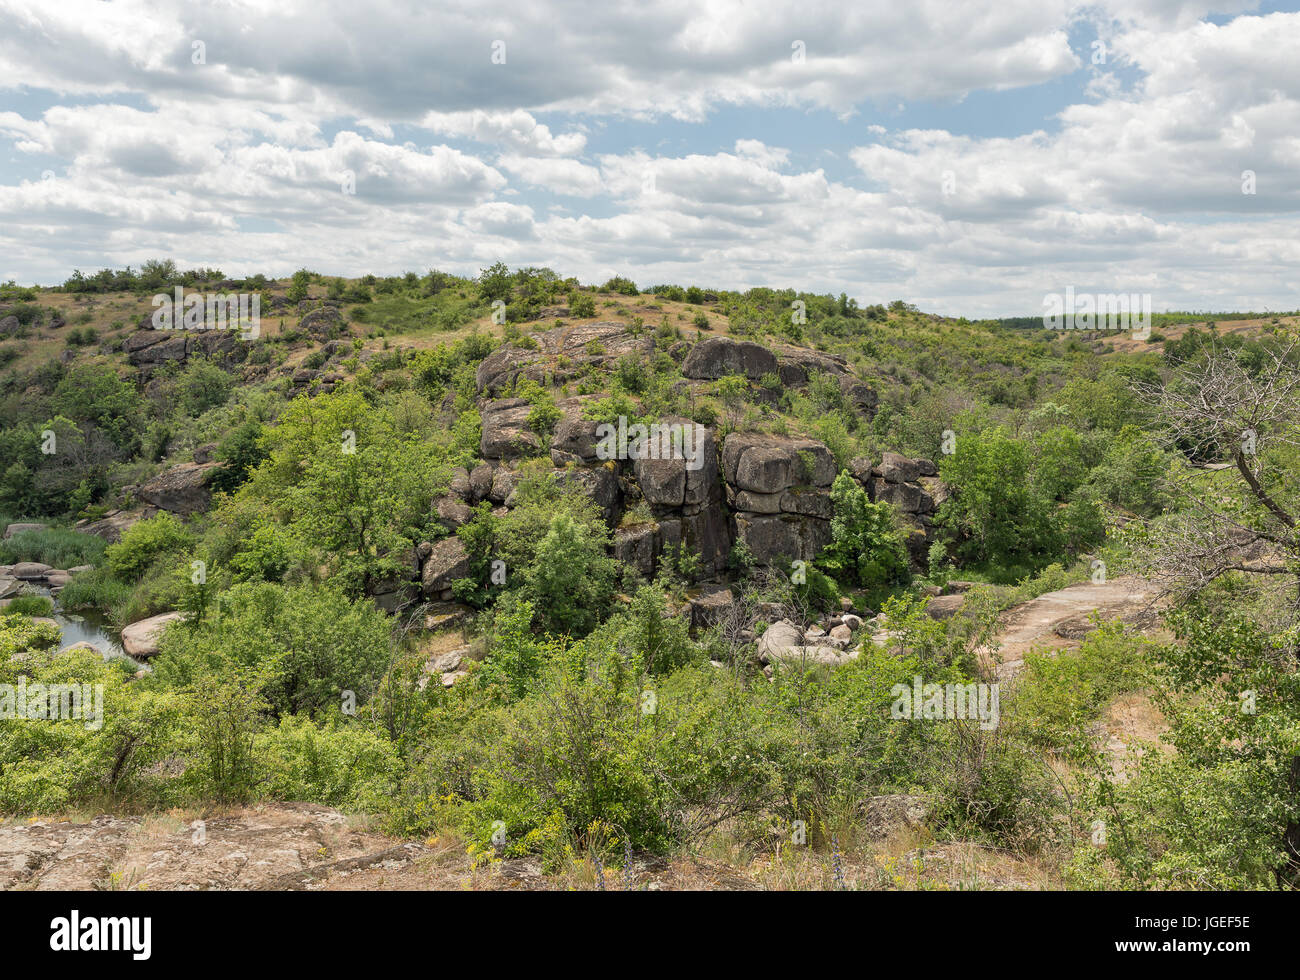 Canyon Arbuzynka paesaggio con fiume e grandi pietre lisce, Ucraina. Foto Stock